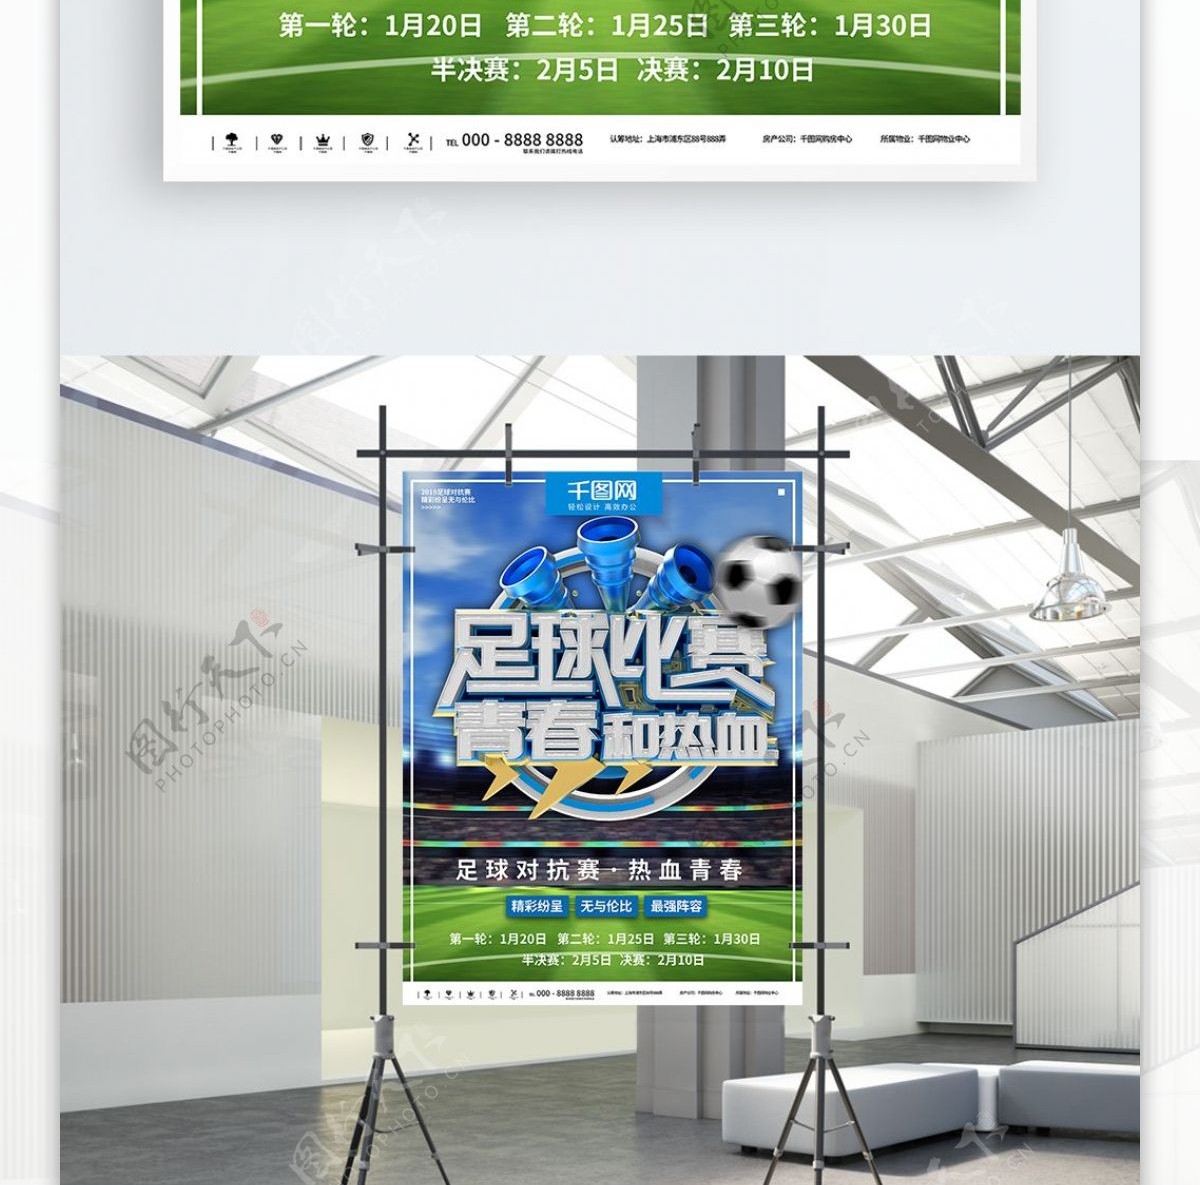 蓝色时尚足球比赛商业宣传海报